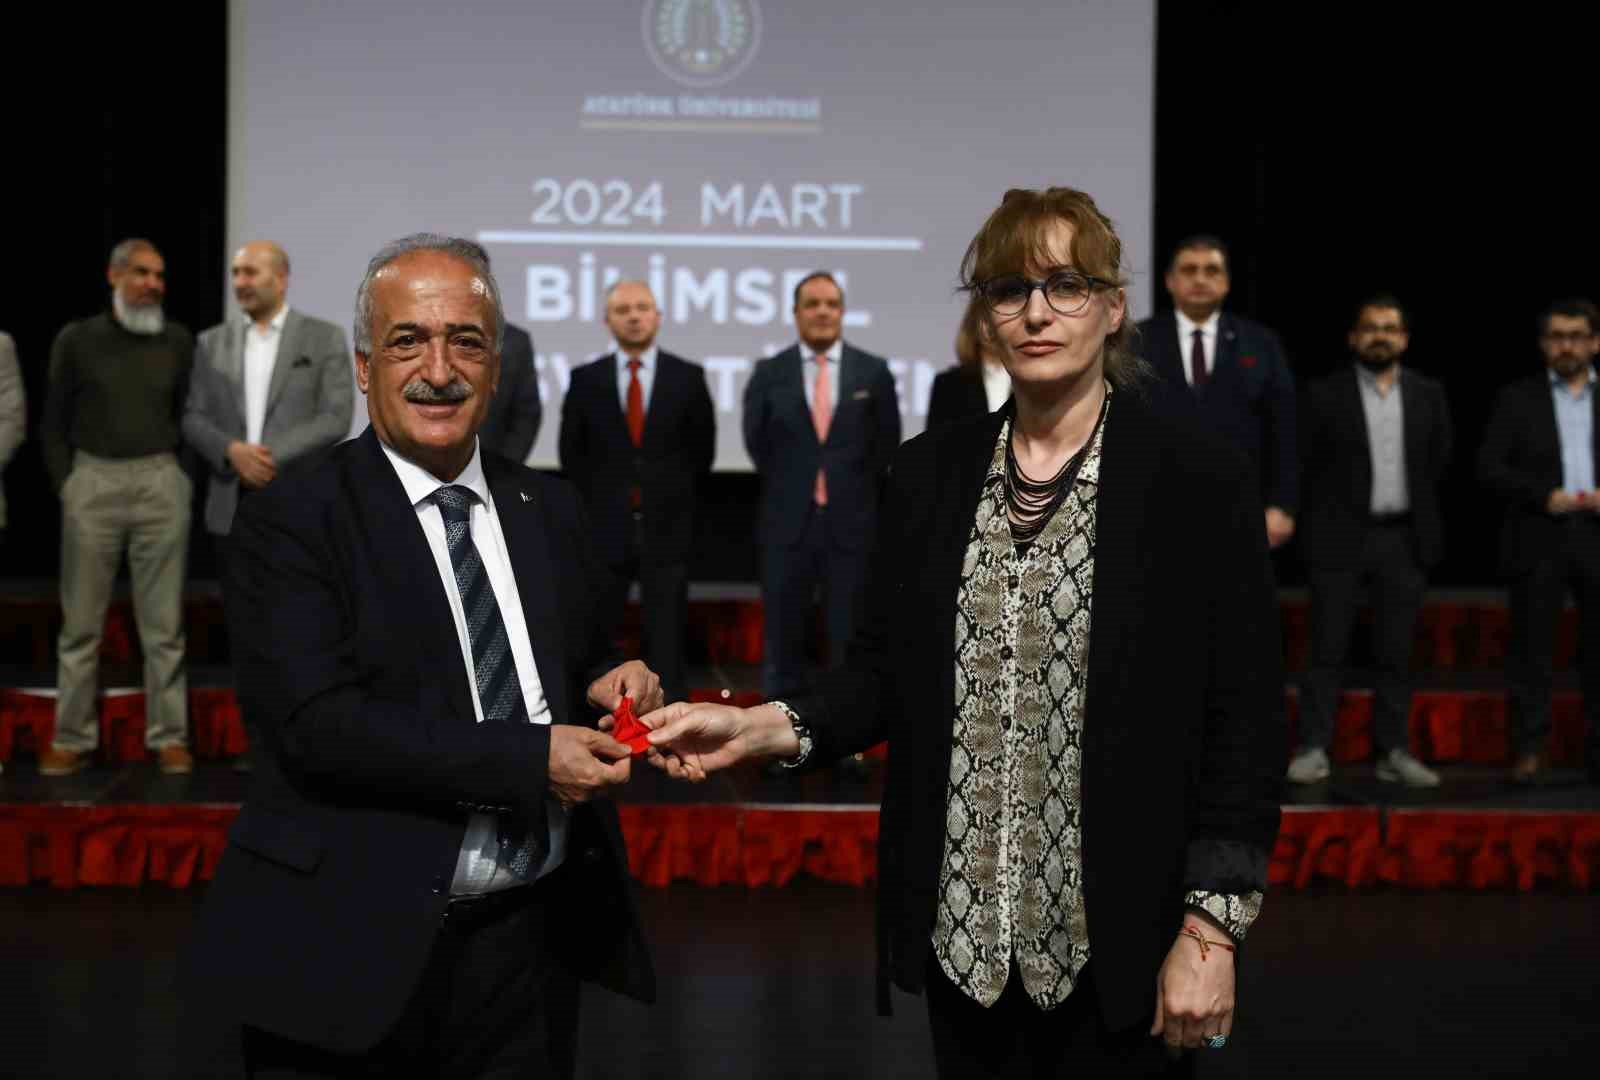 Atatürk Üniversitesi’nde bilimsel teşvik töreni
